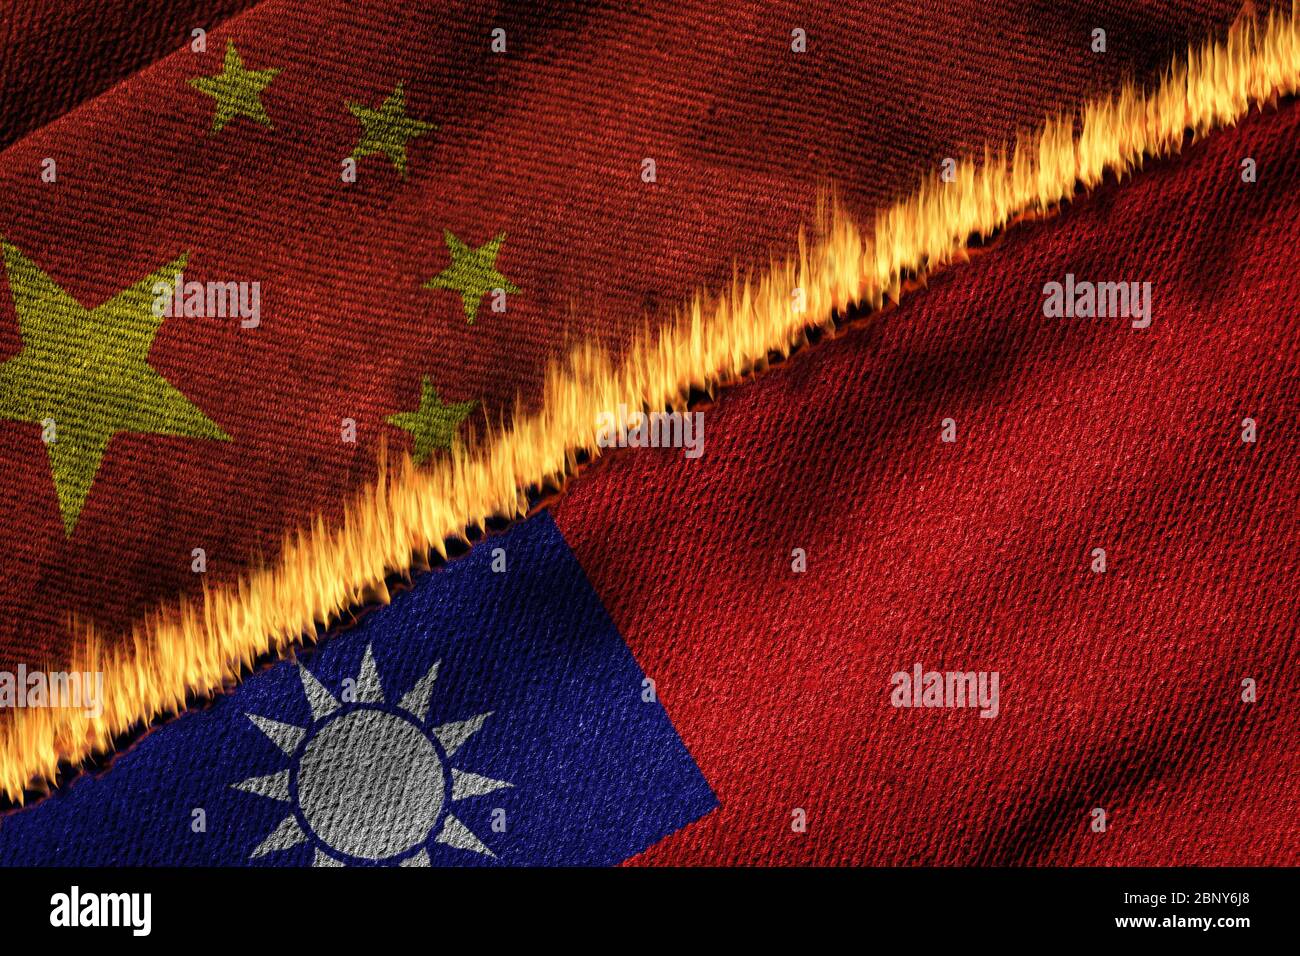 Représentation en 3D des drapeaux de la Chine et de Taïwan sur le feu illustrant le concept de tension politique et de conflit entre les deux entités. Banque D'Images